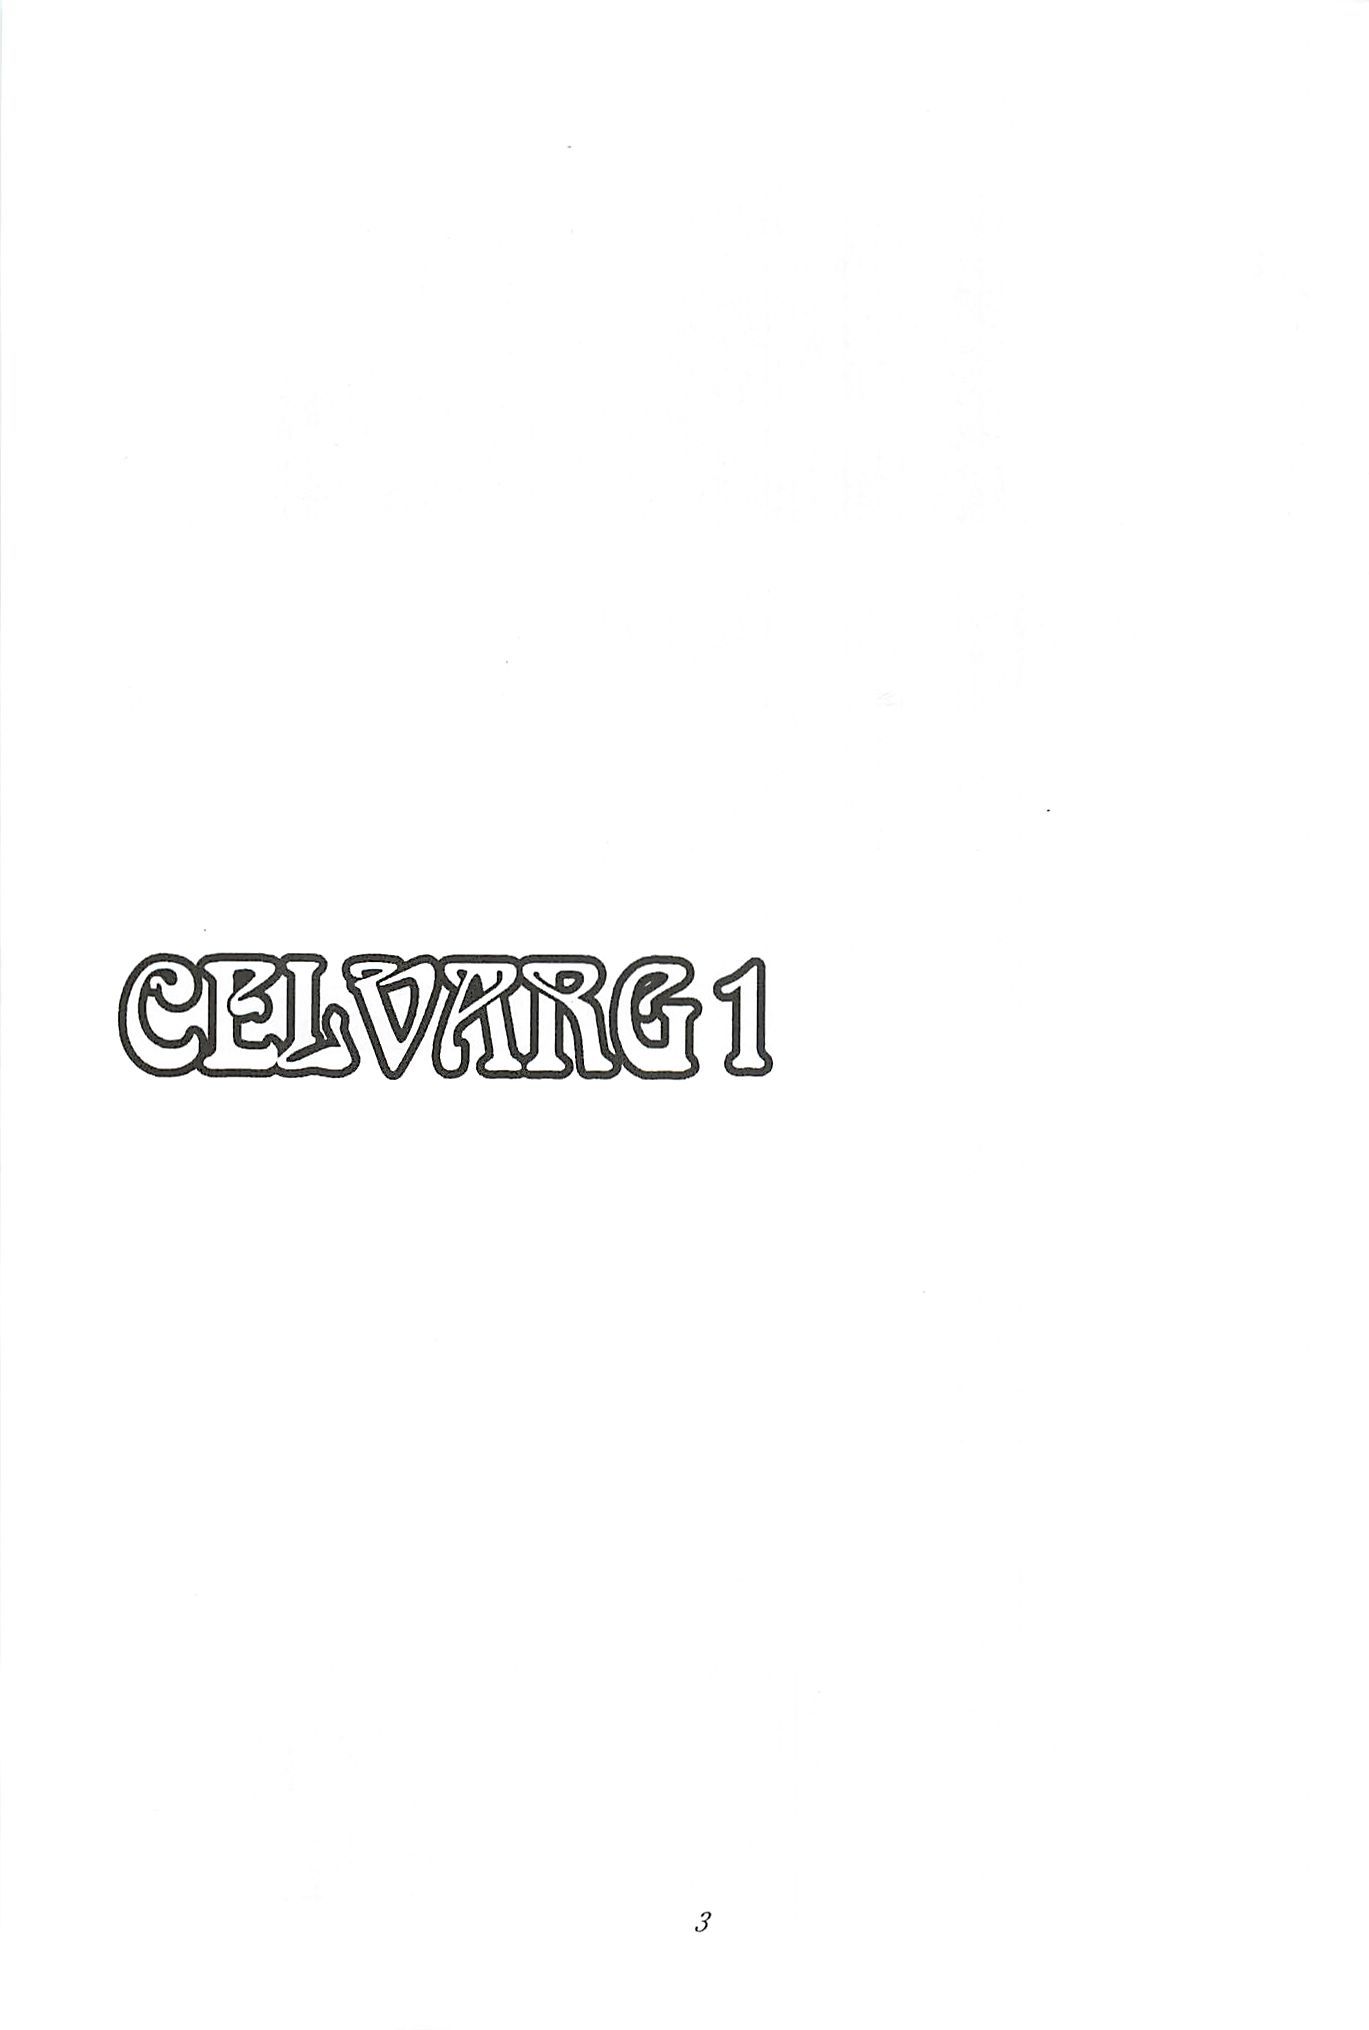 CELVARG1